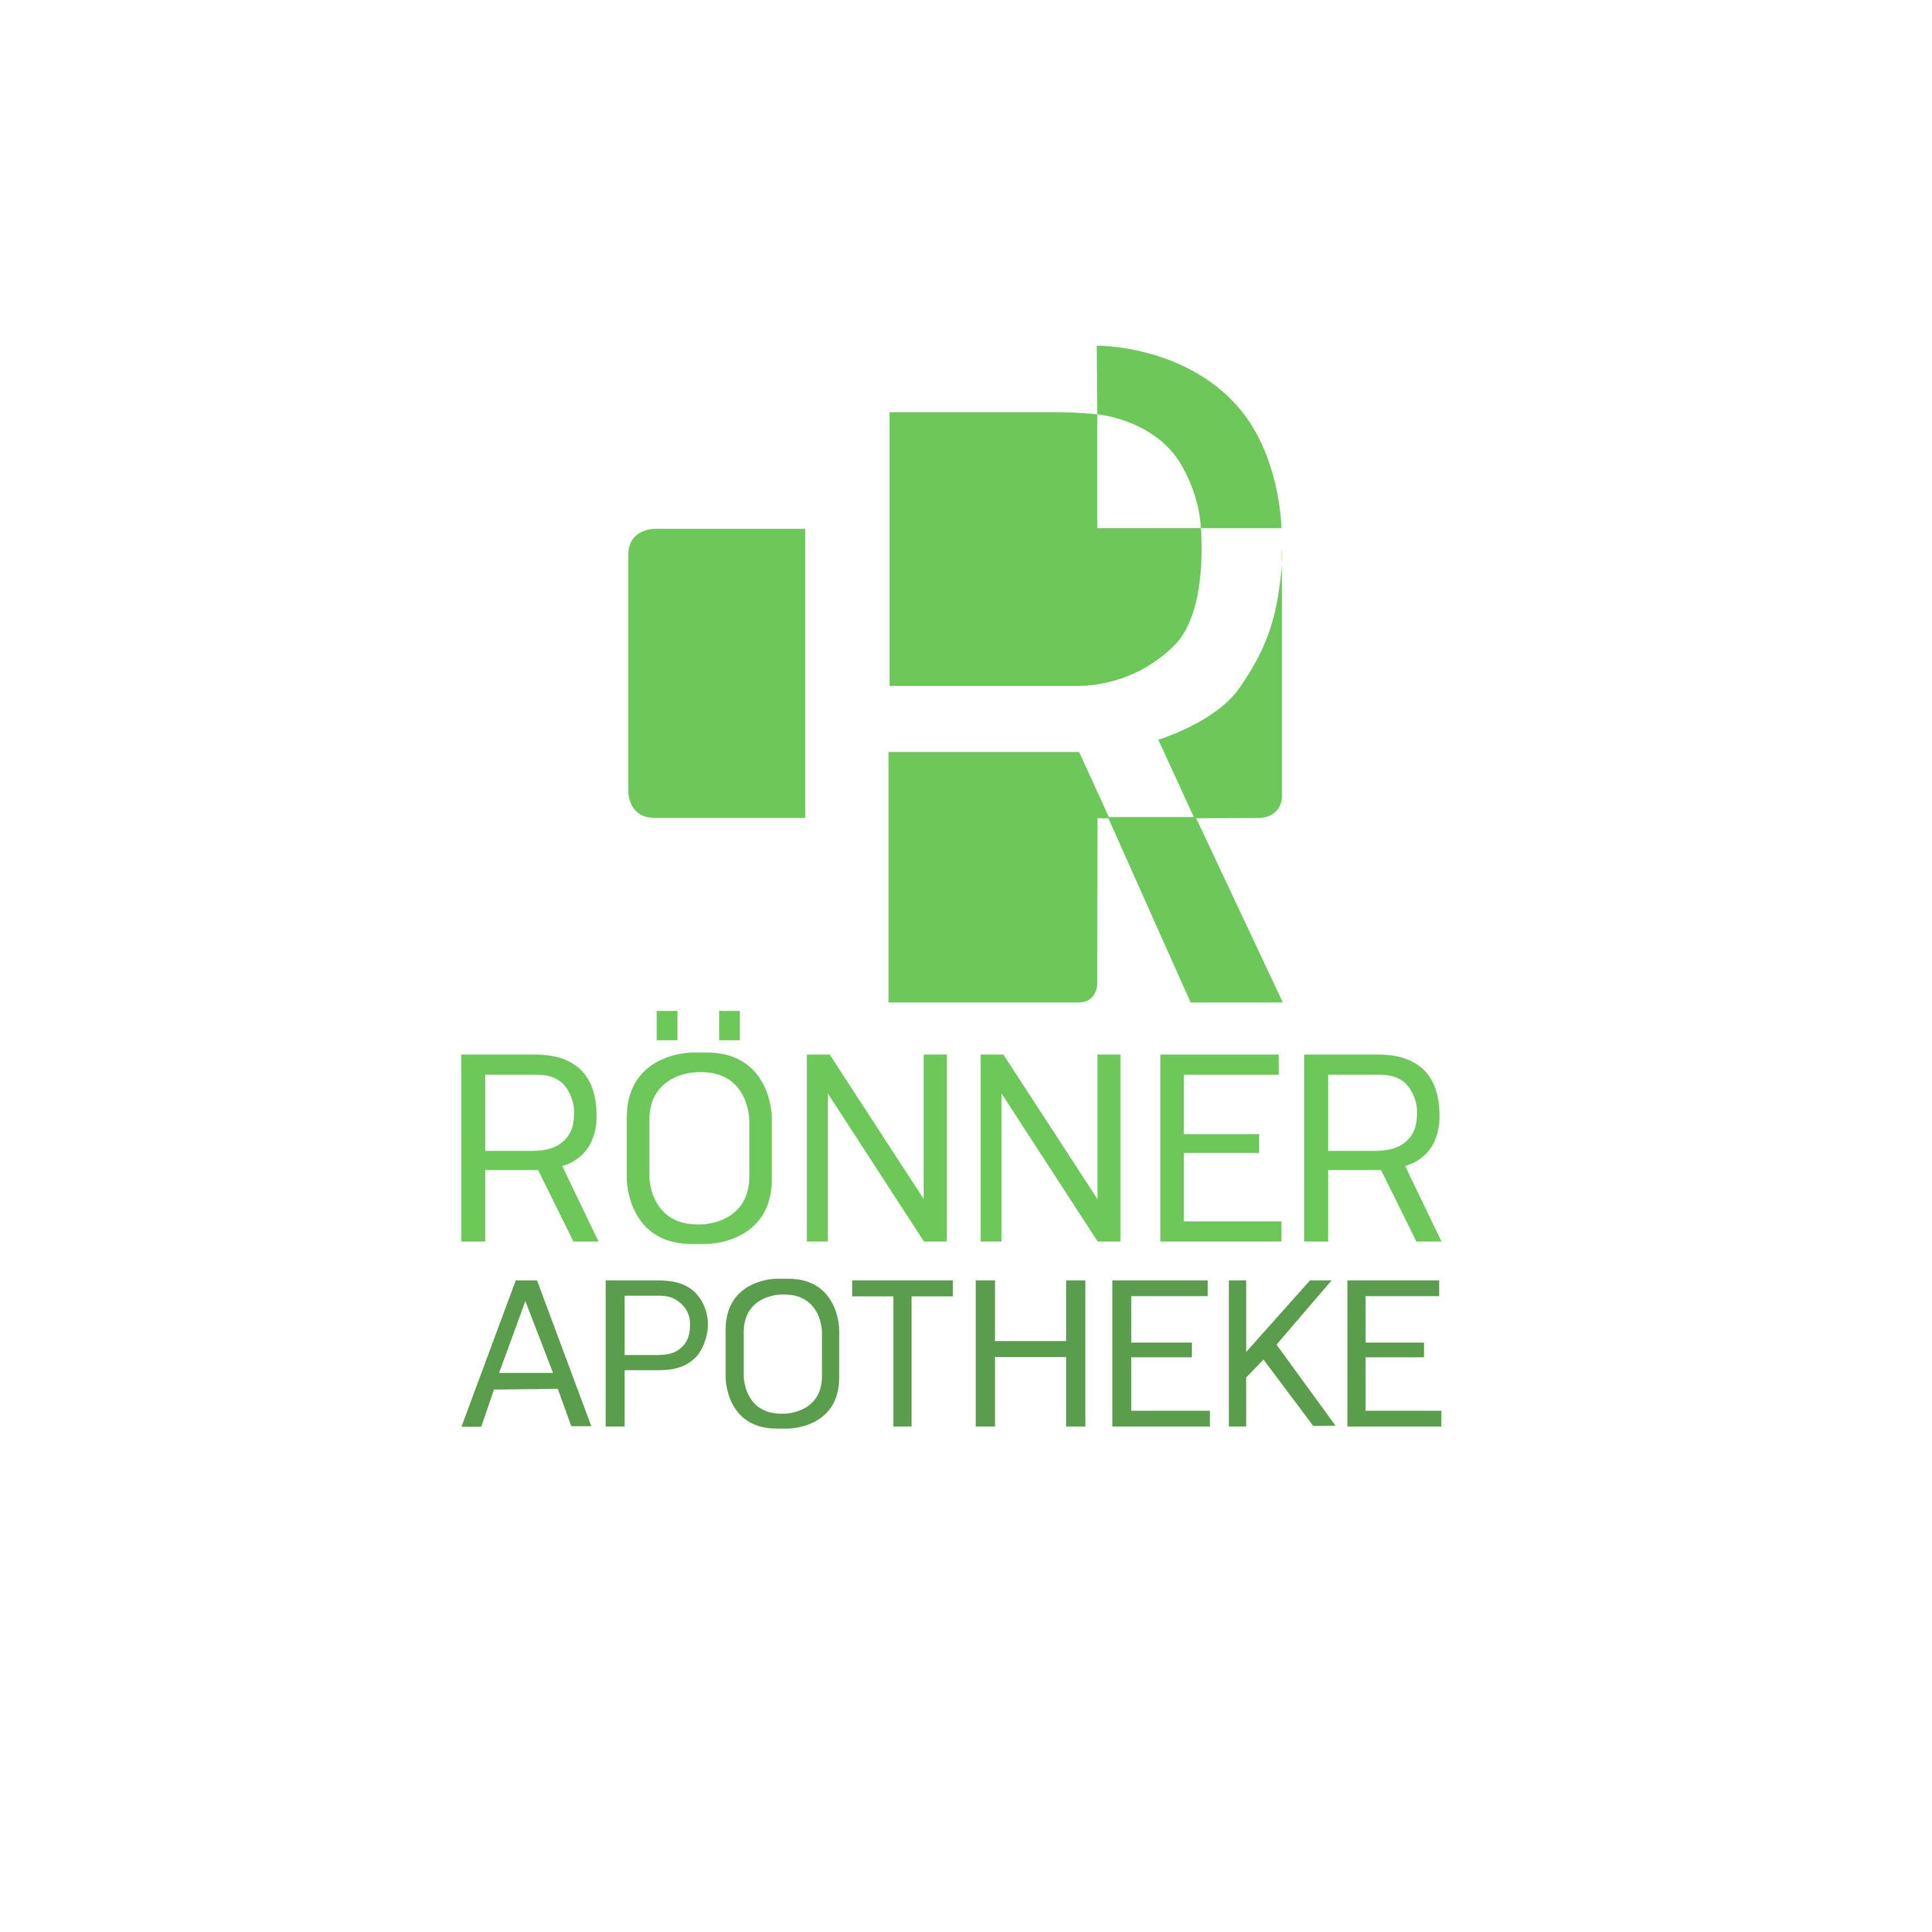 Rönner Apotheke im Marktkauf Bünde in Bünde - Logo